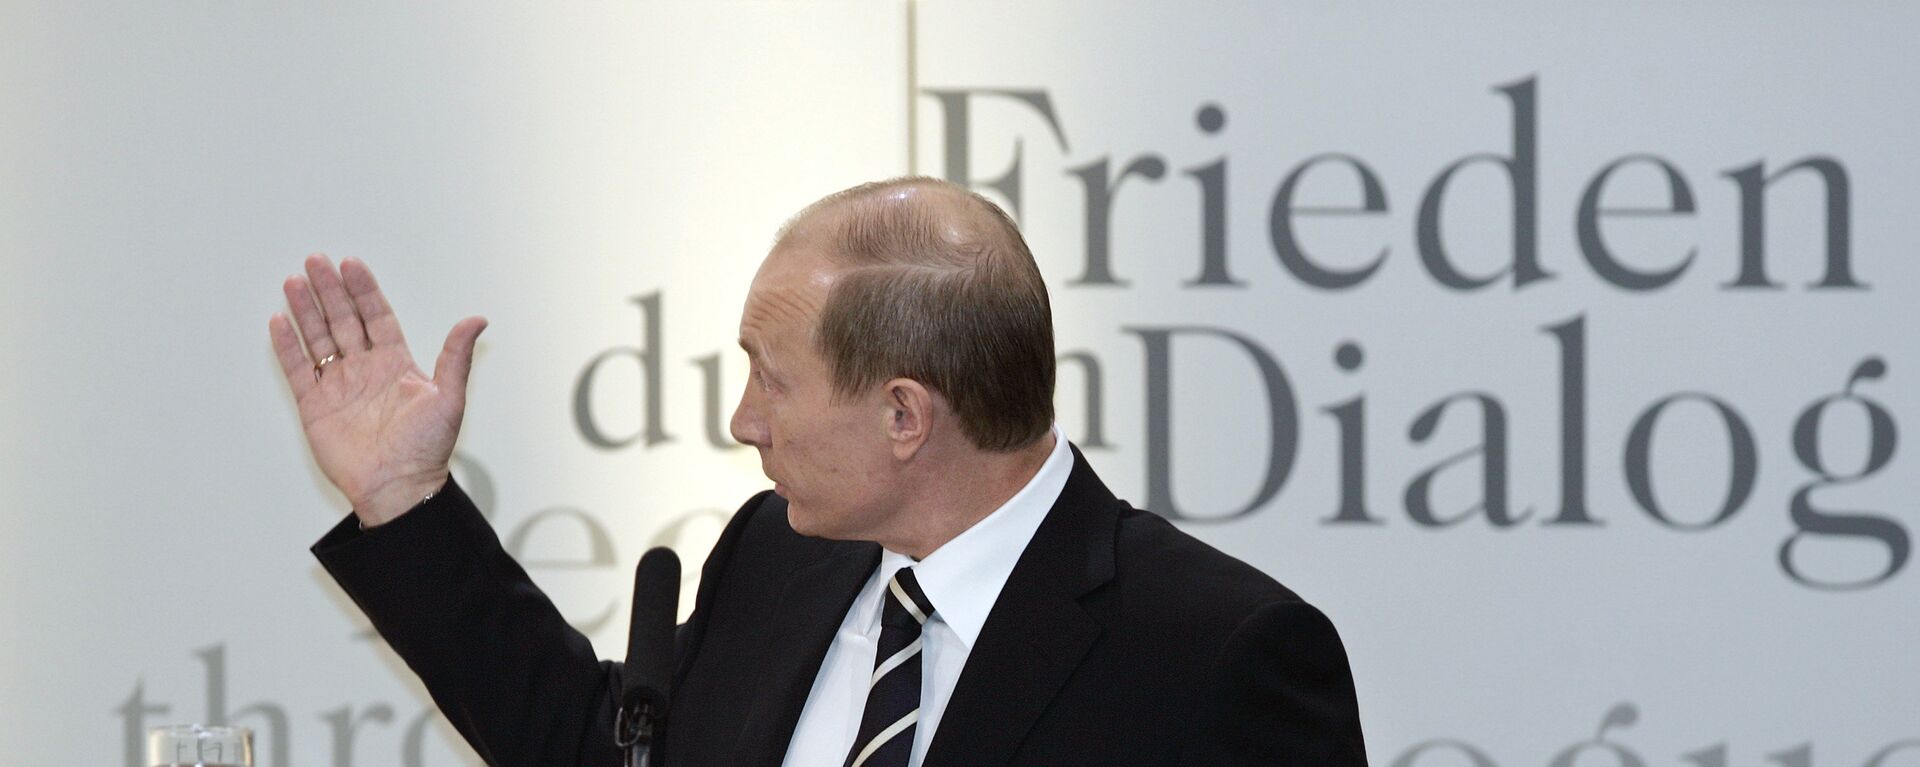 Владимир Путин у Минхену 2007. године. - Sputnik Србија, 1920, 10.02.2017